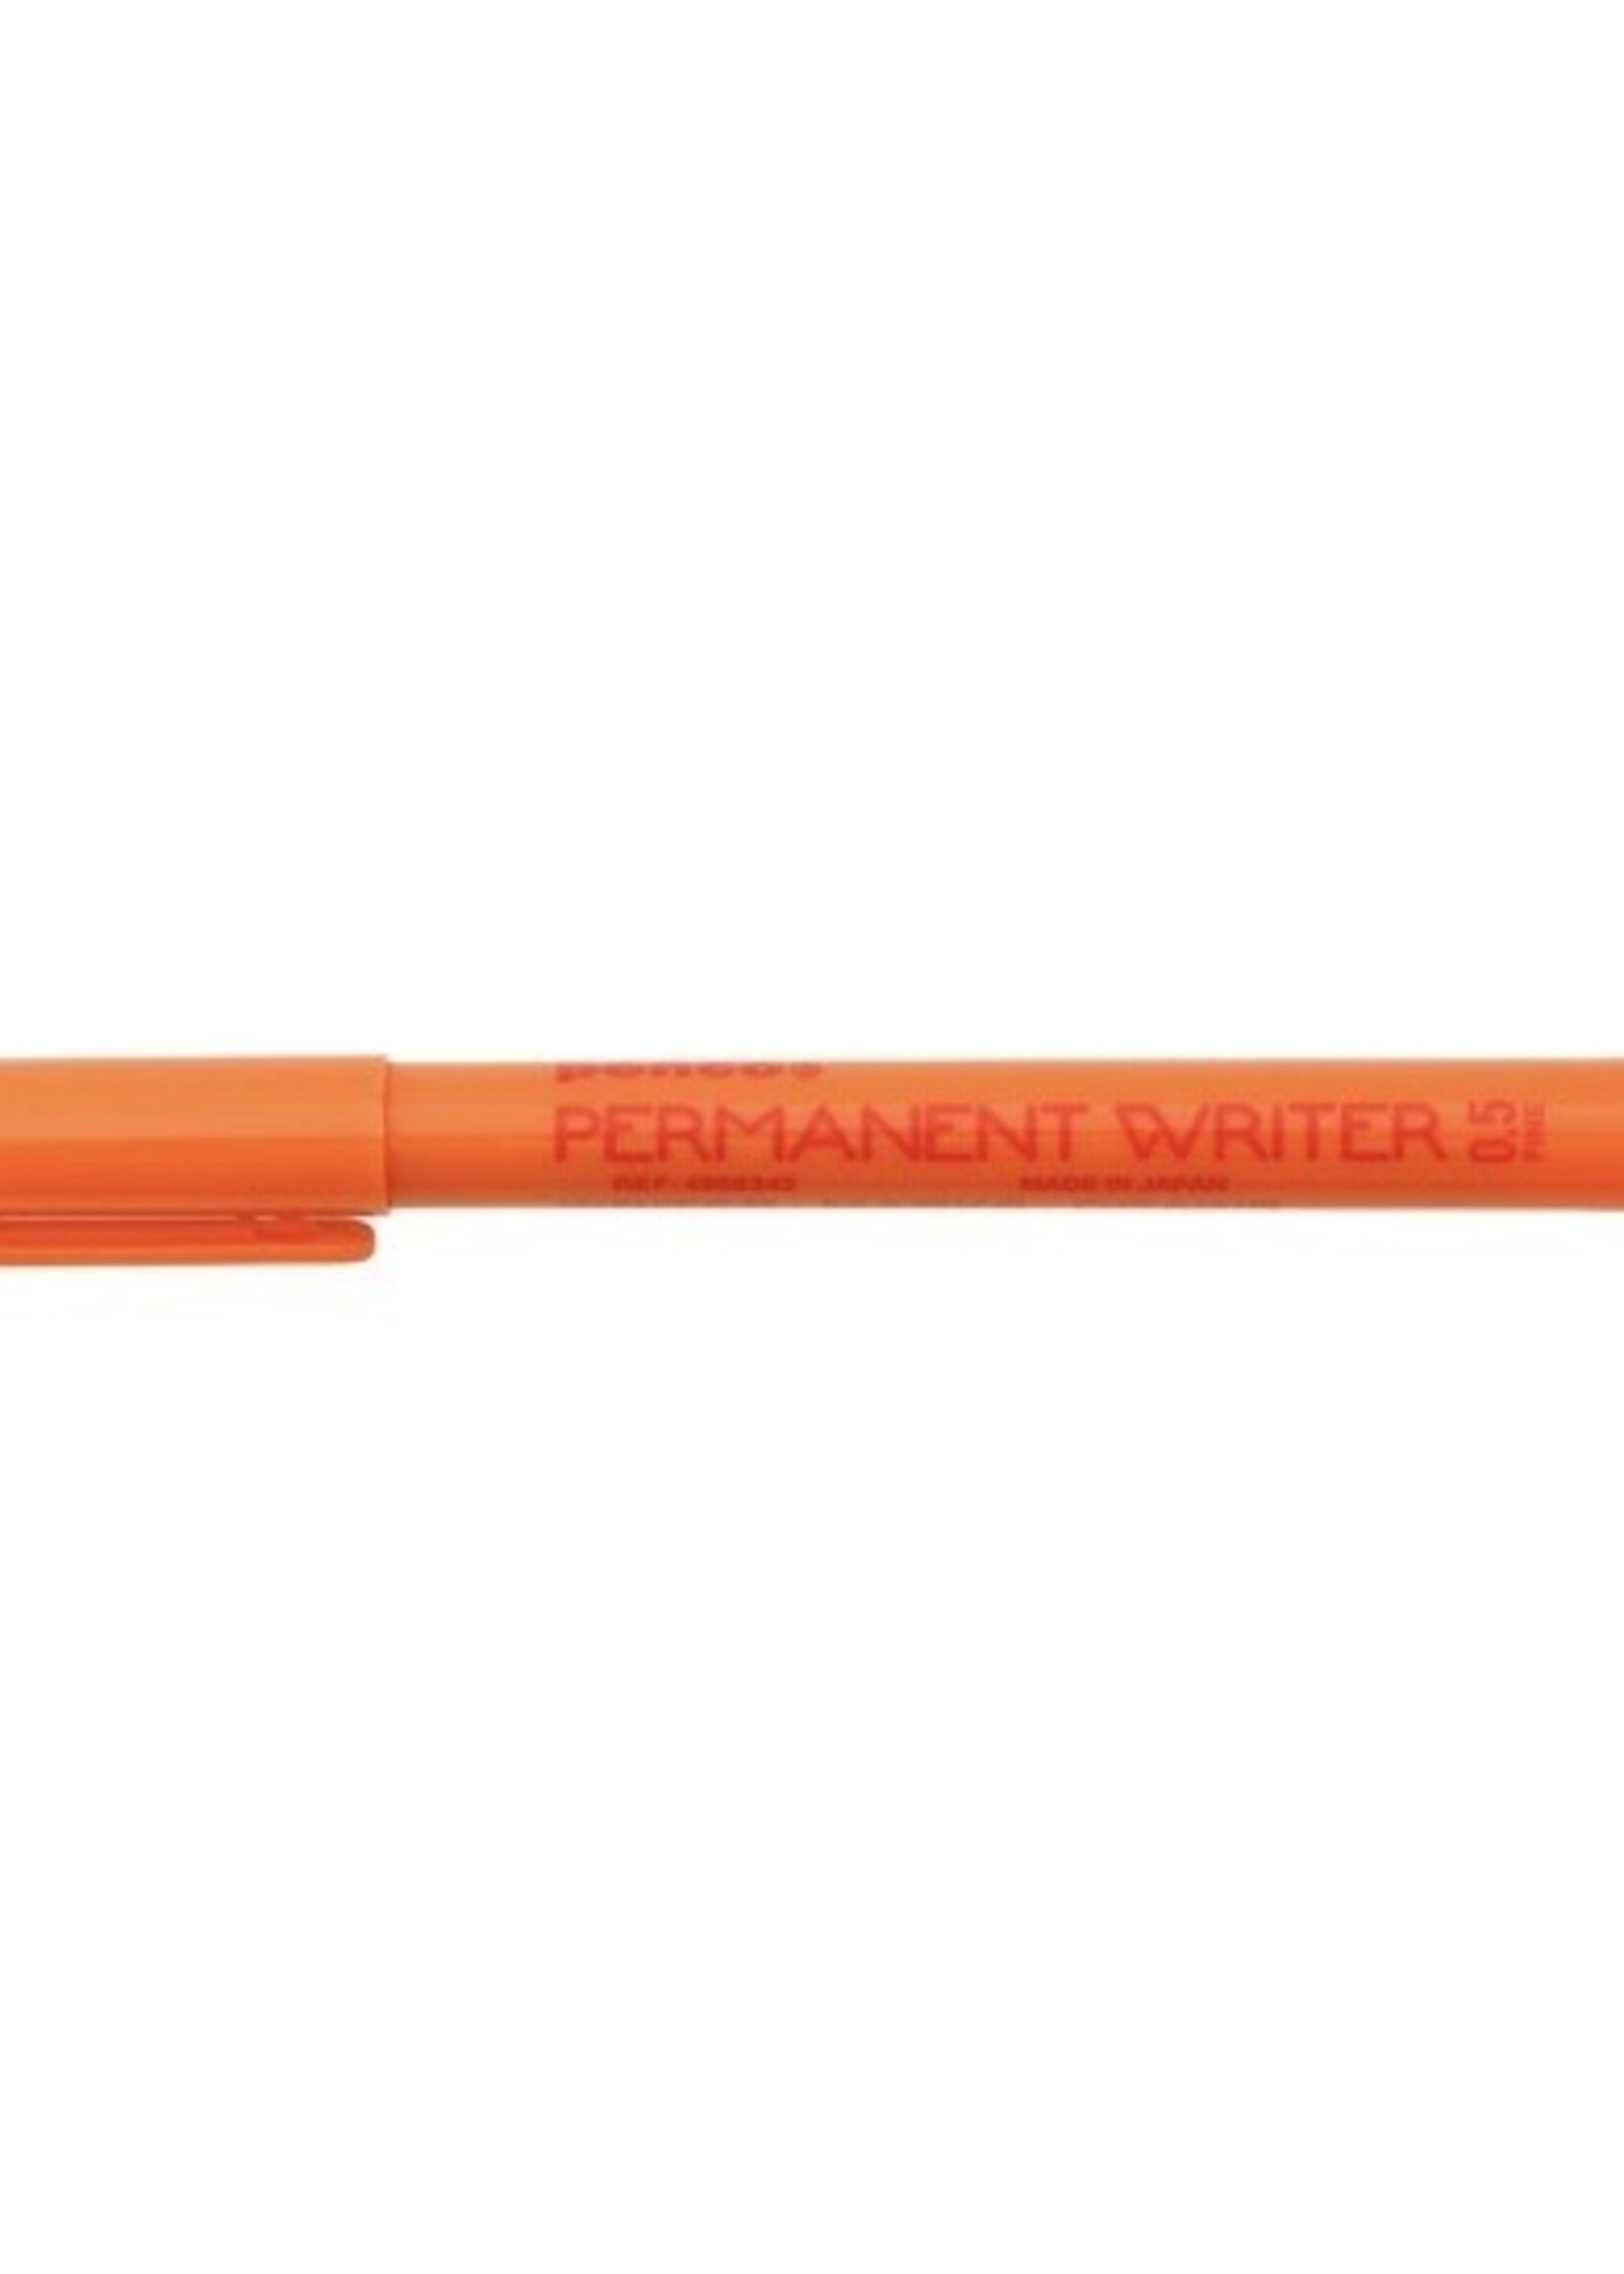 Hightide Pen "Permanent Writer" by HIGHTIDE